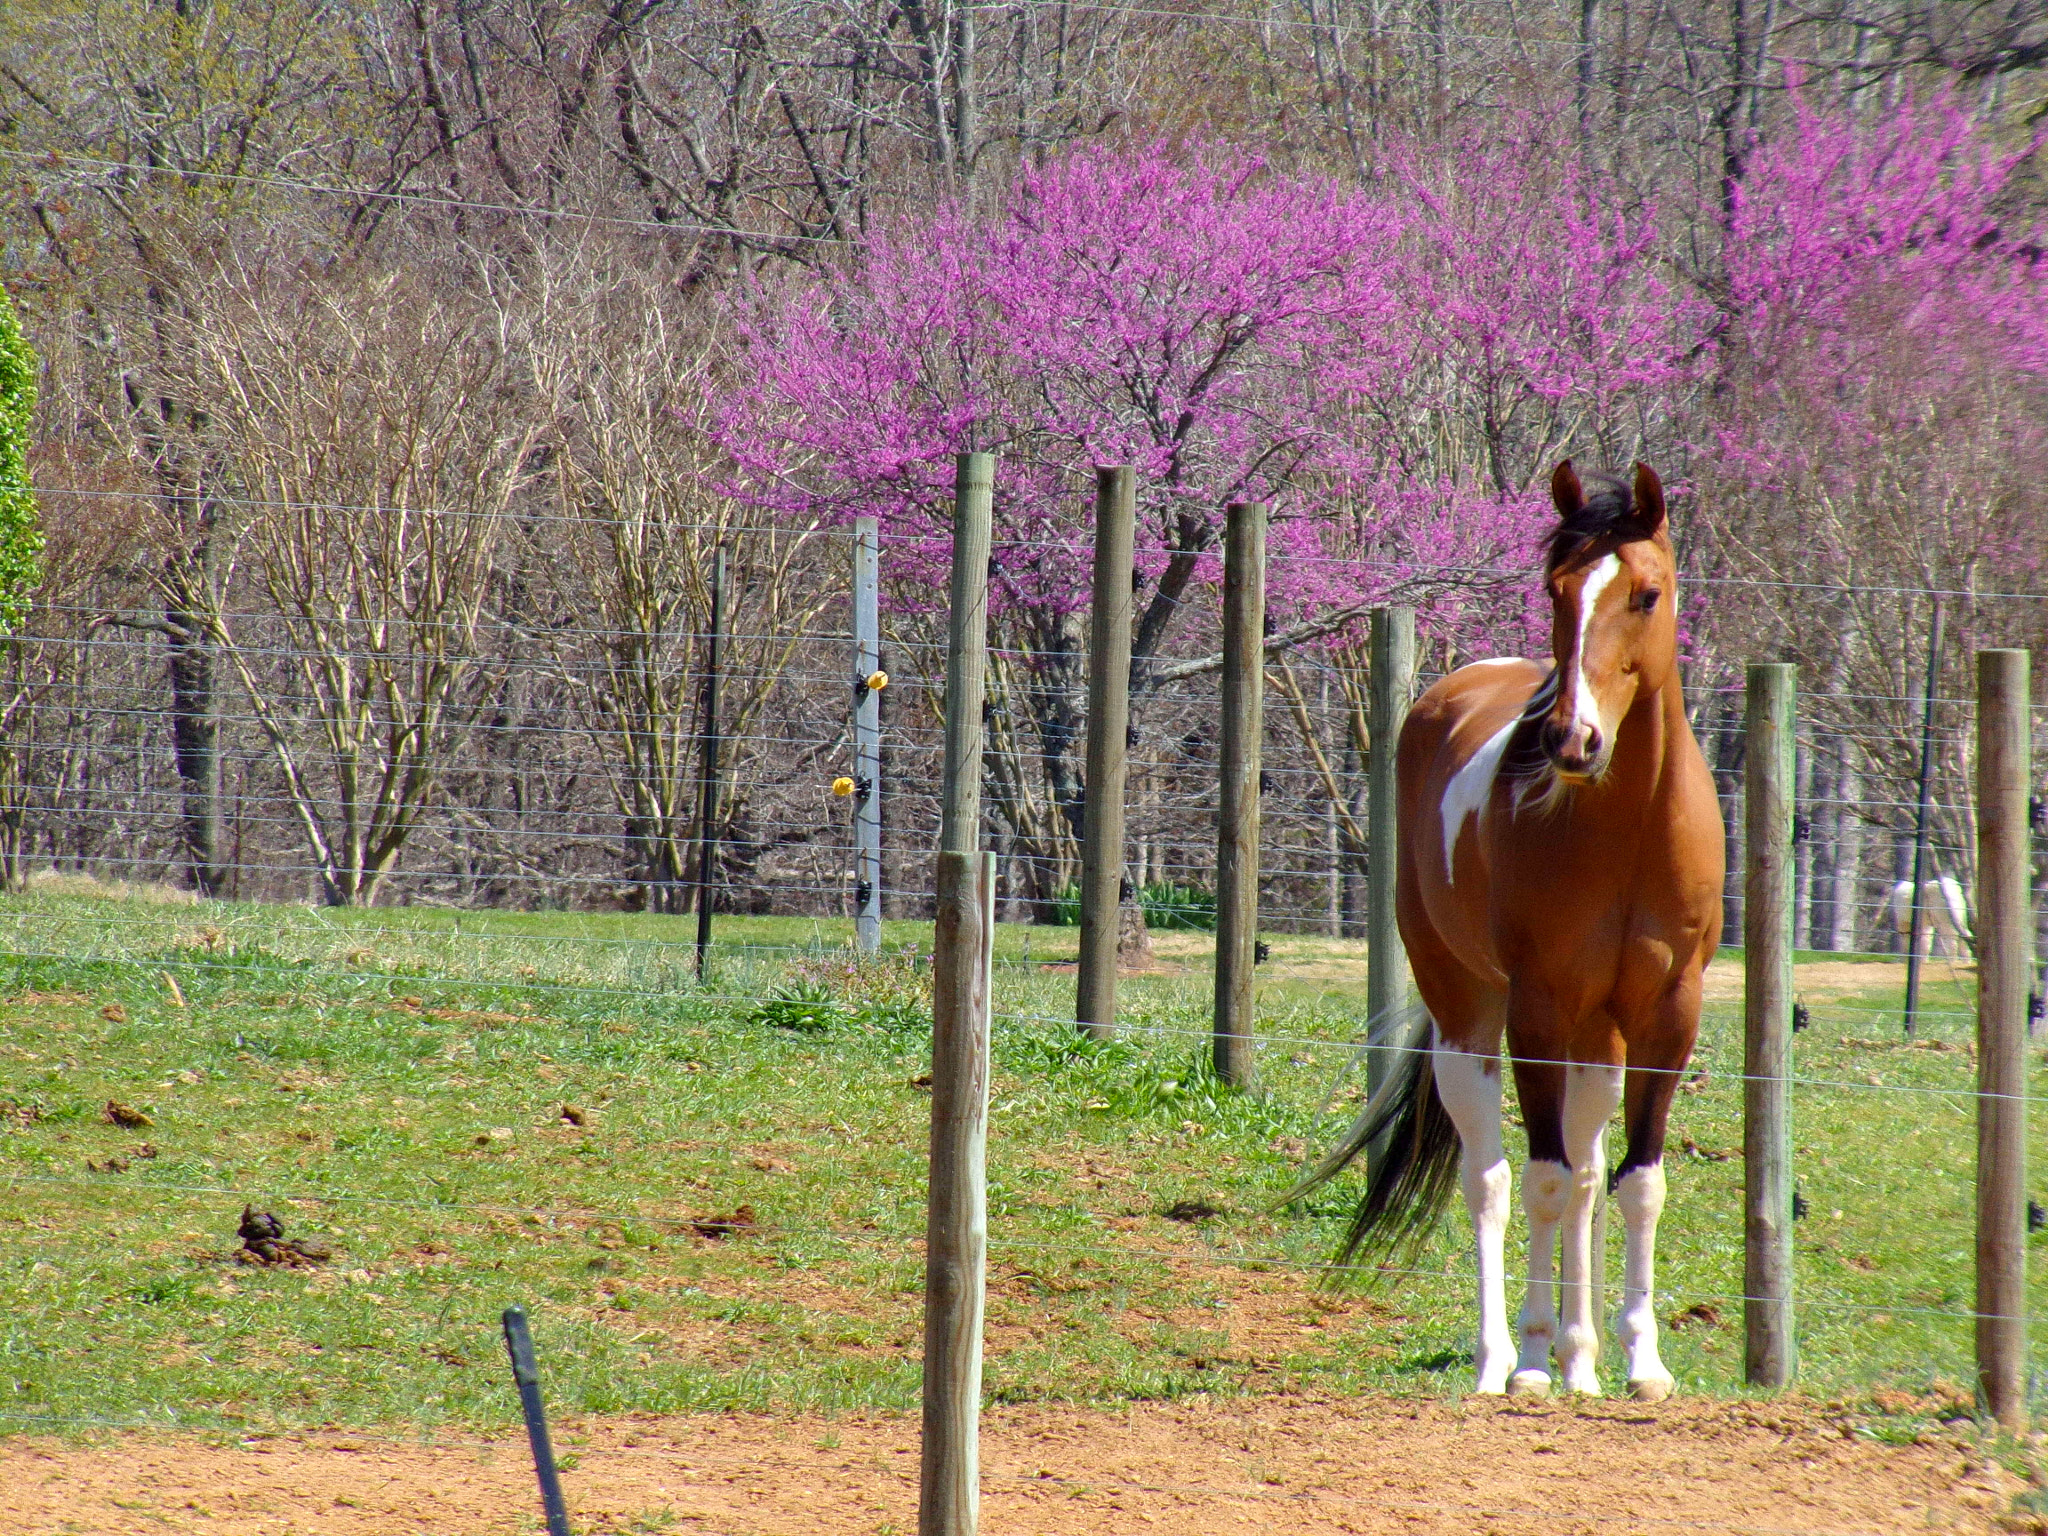 JK KODAK PIXPRO AZ252 sample photo. Maverick the horse at the stables photography